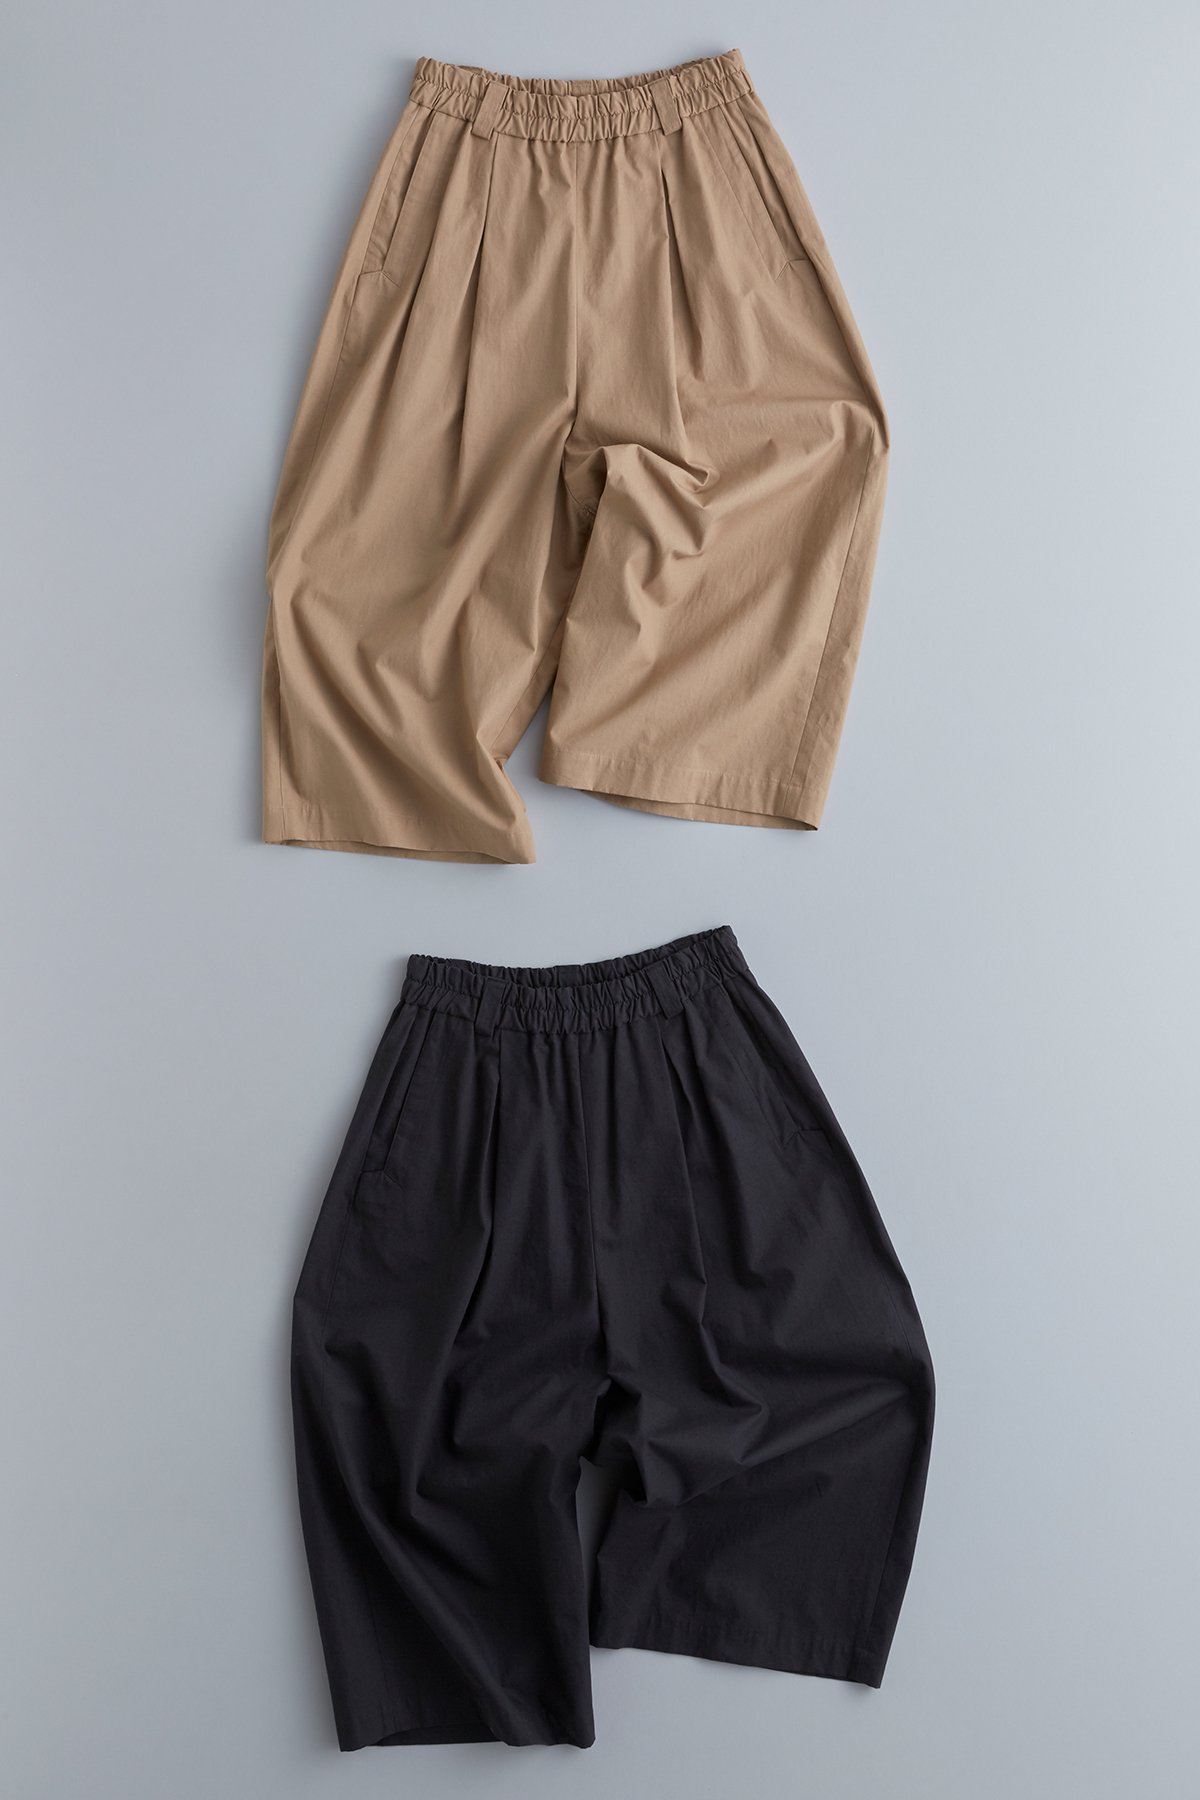 cotton linen gaucho pants - atelier naruse | Online store